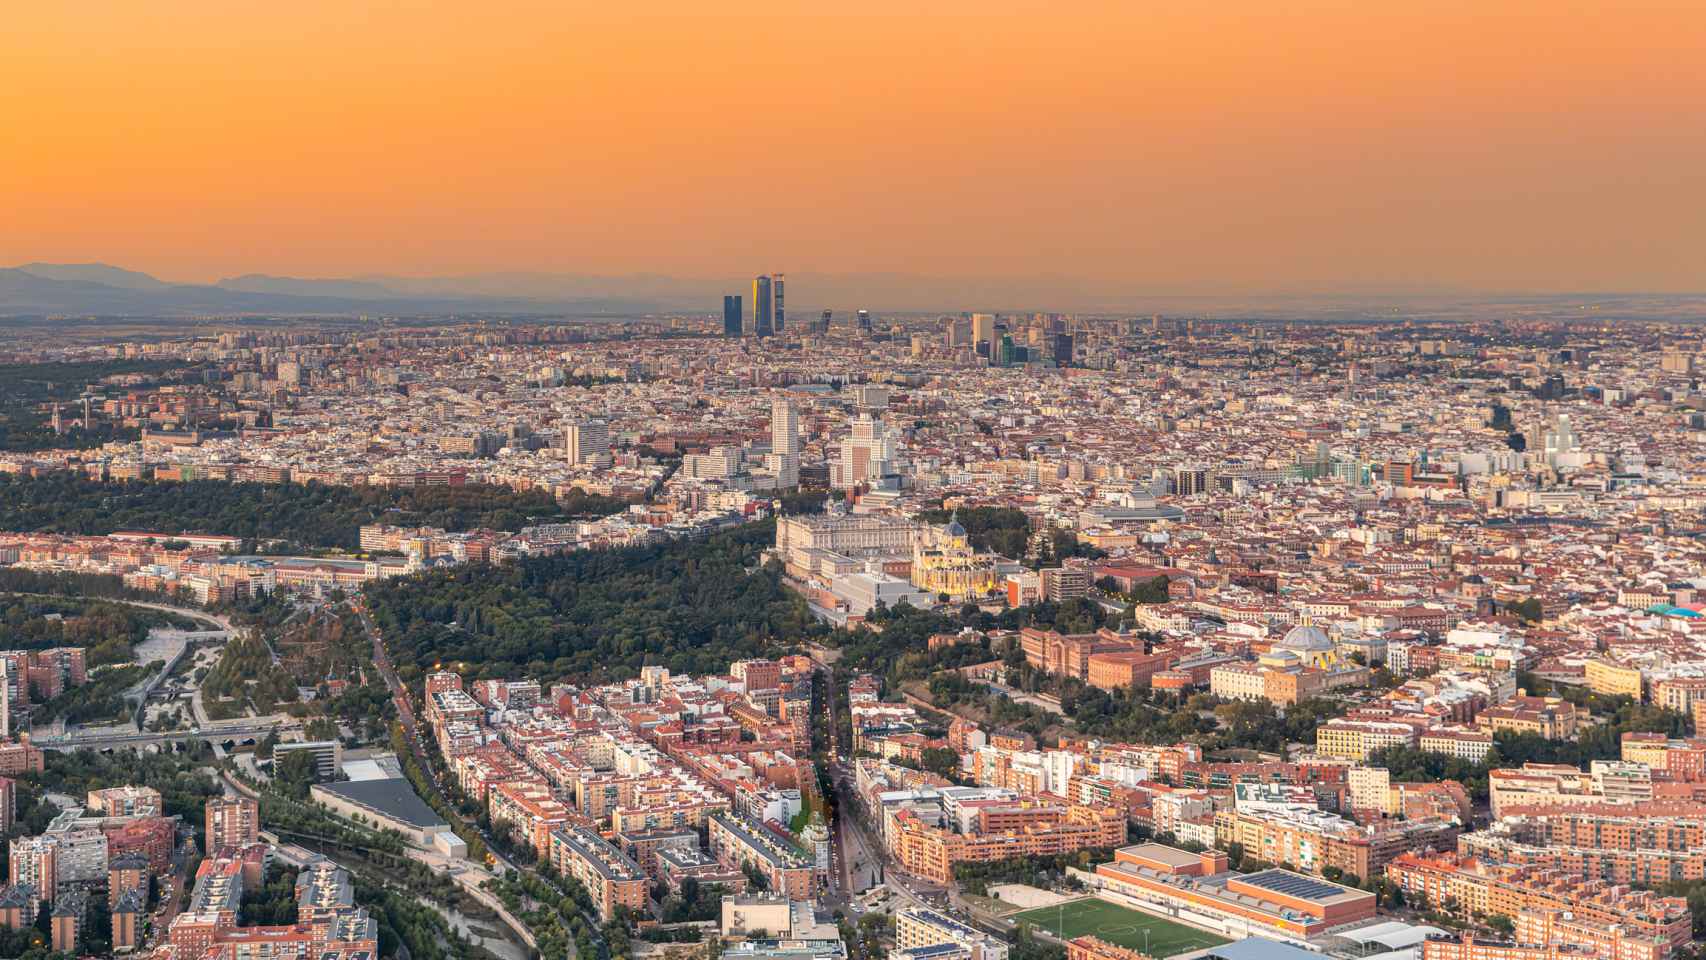 Conoce el monumento más decepcionante de Madrid según TripAdvisor